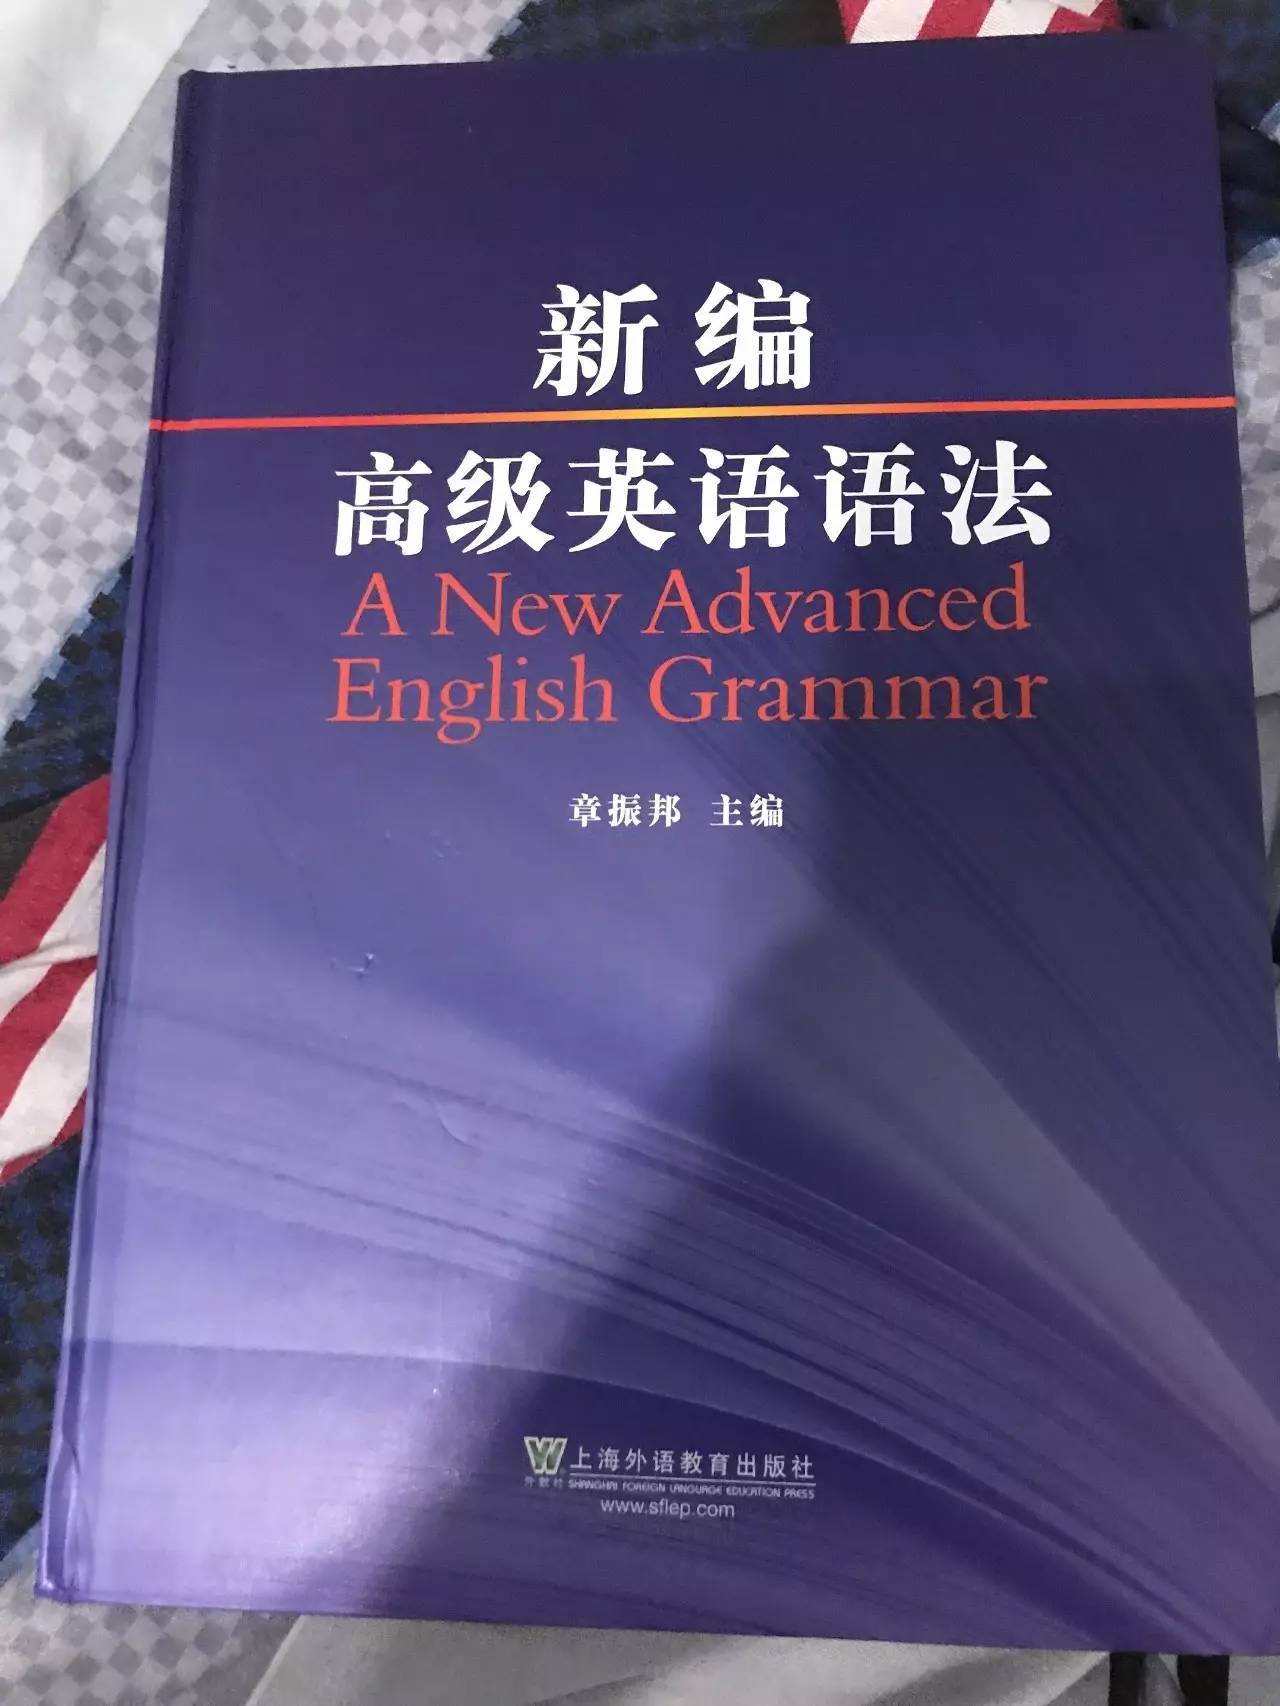 将来用英语怎么写